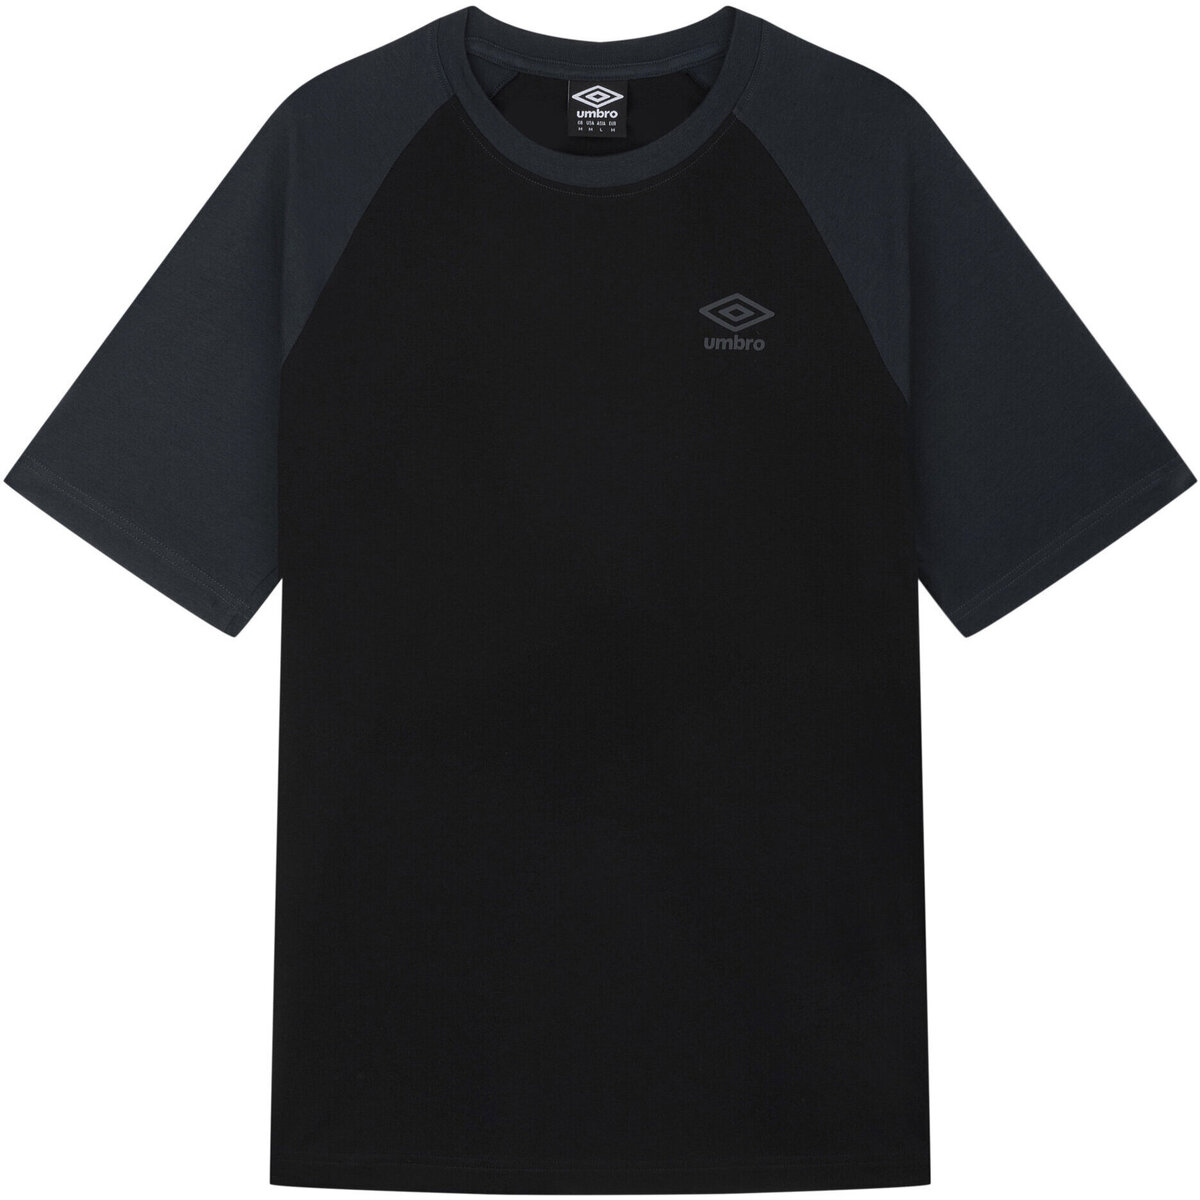 Vêtements Homme T-shirts manches longues Umbro UO1706 Noir